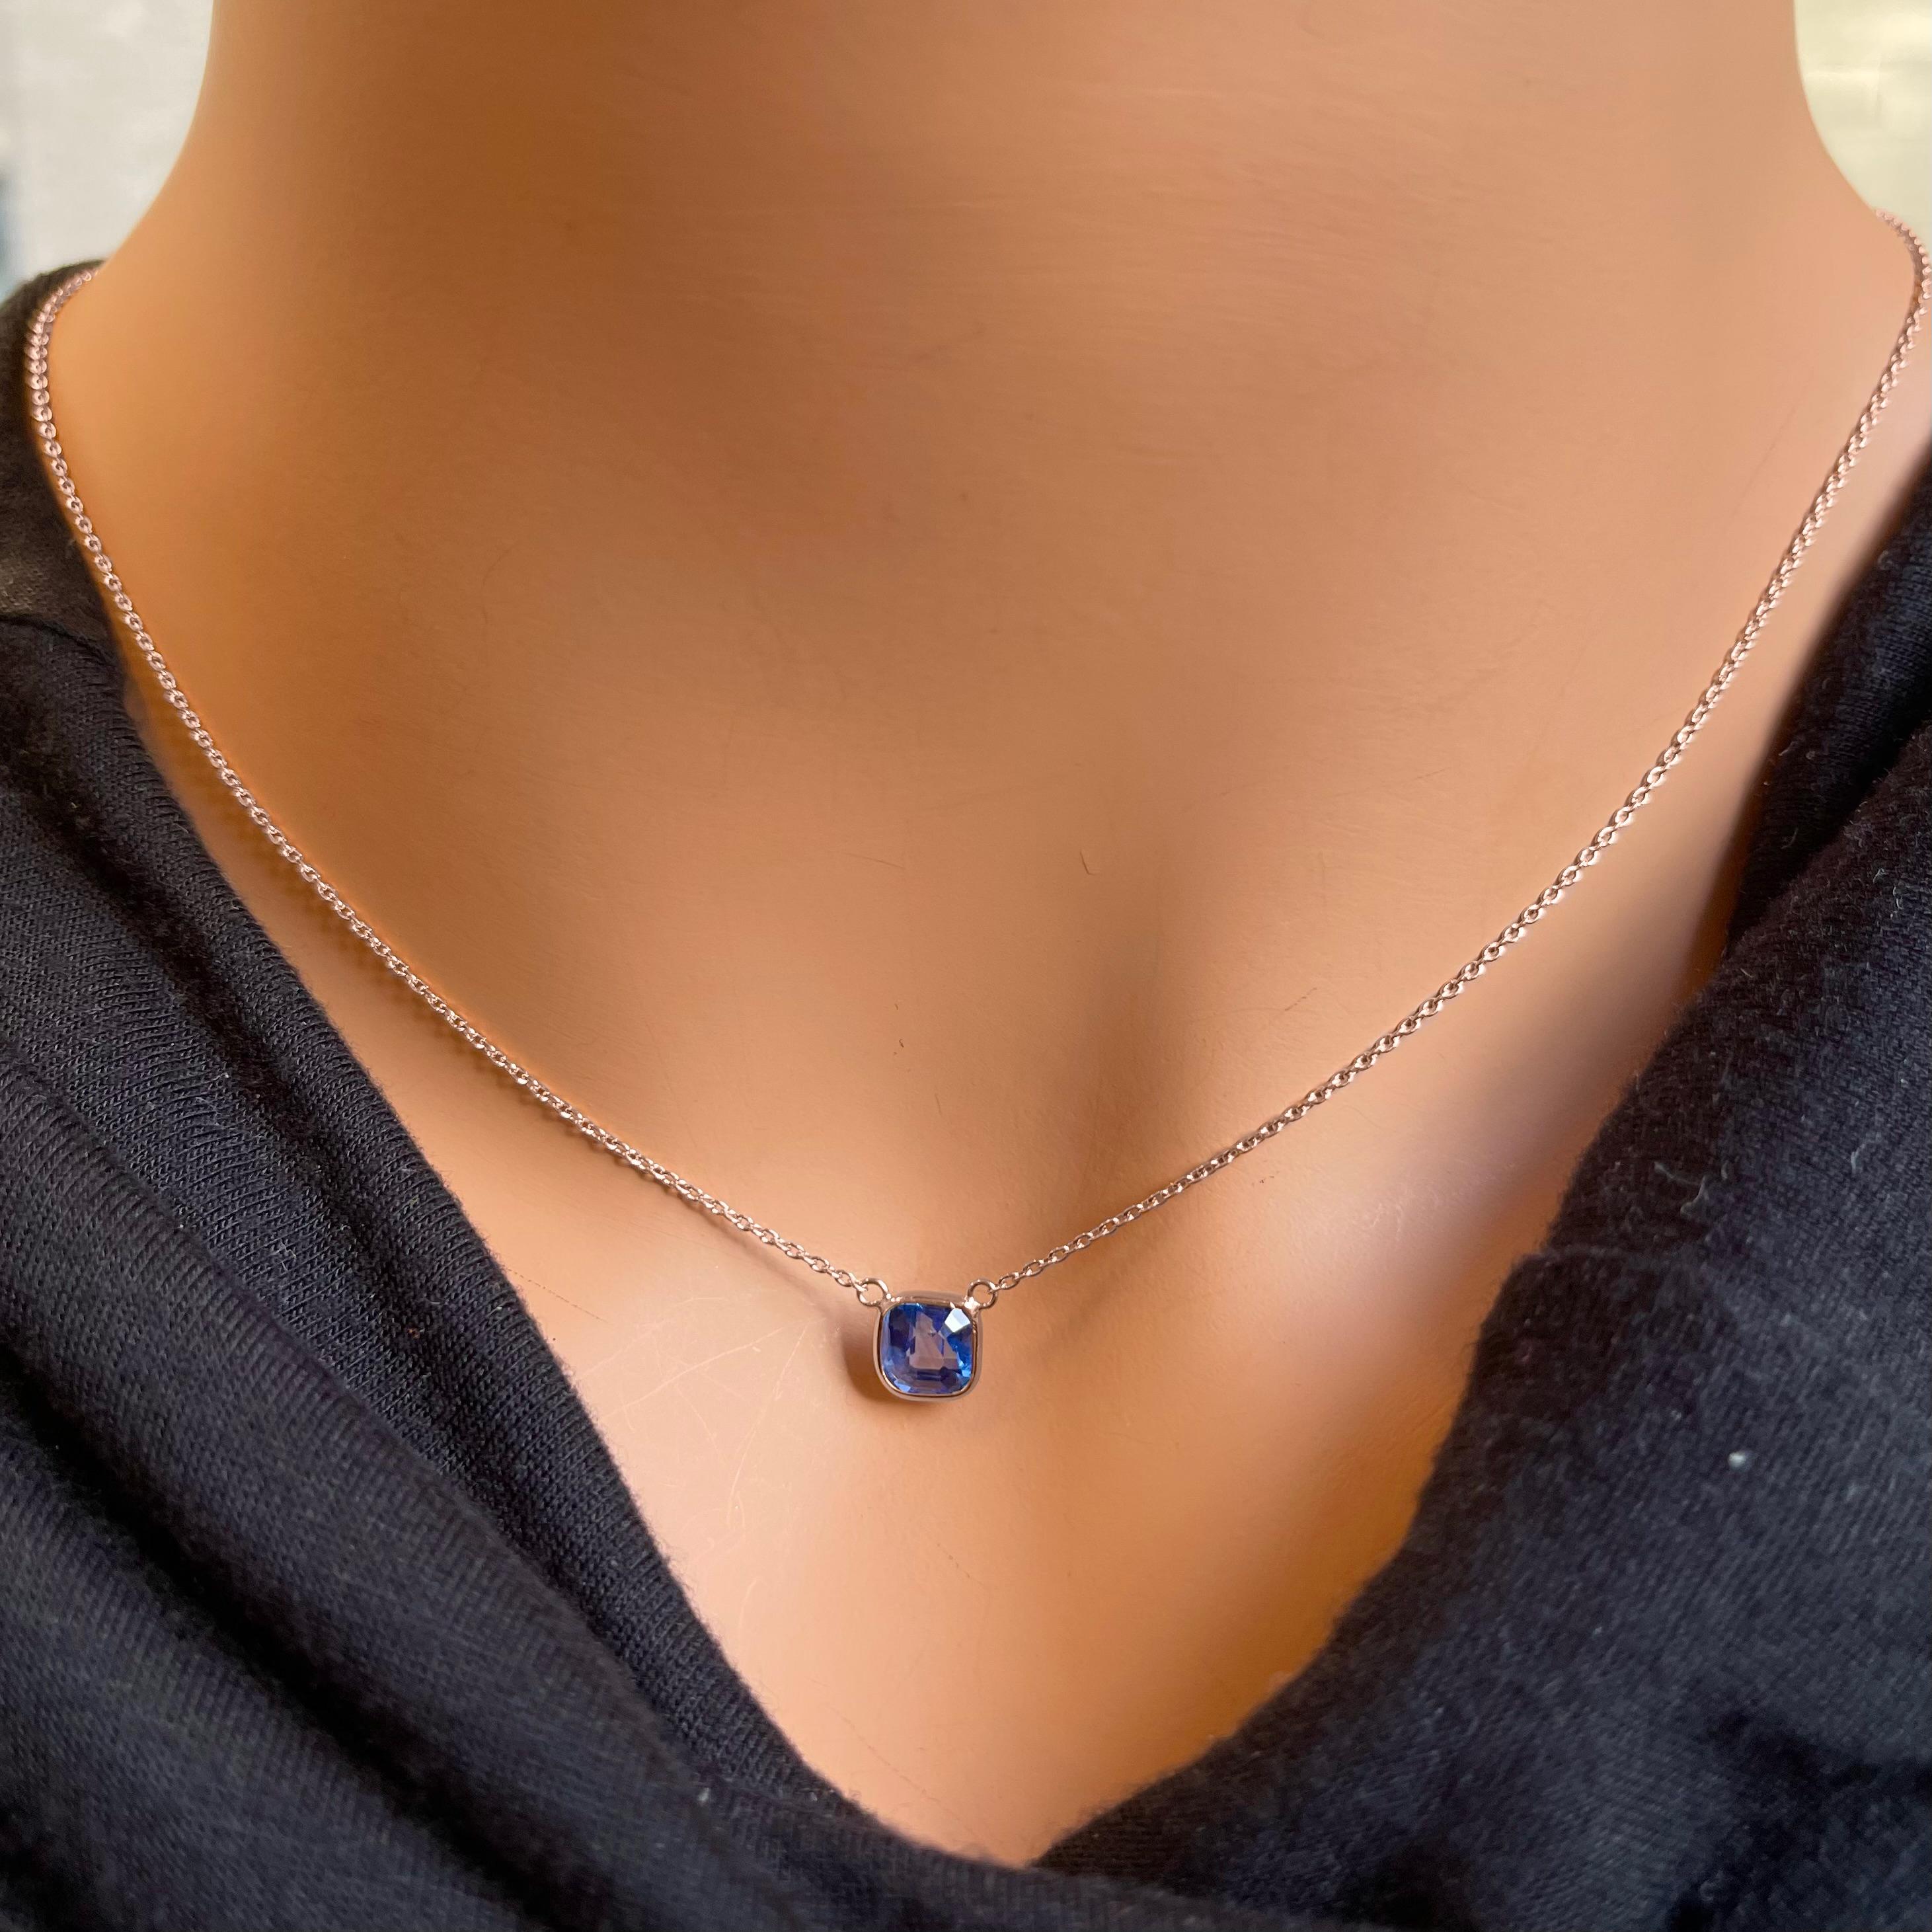 Eine modische Halskette aus 14-karätigem Roségold mit einem blauen Saphir im zertifizierten Asscher-Schliff mit einem Gewicht von 1,66 Karat als Hauptstein wäre eine atemberaubende und anspruchsvolle Wahl. Blaue Saphire sind für ihre bezaubernde,